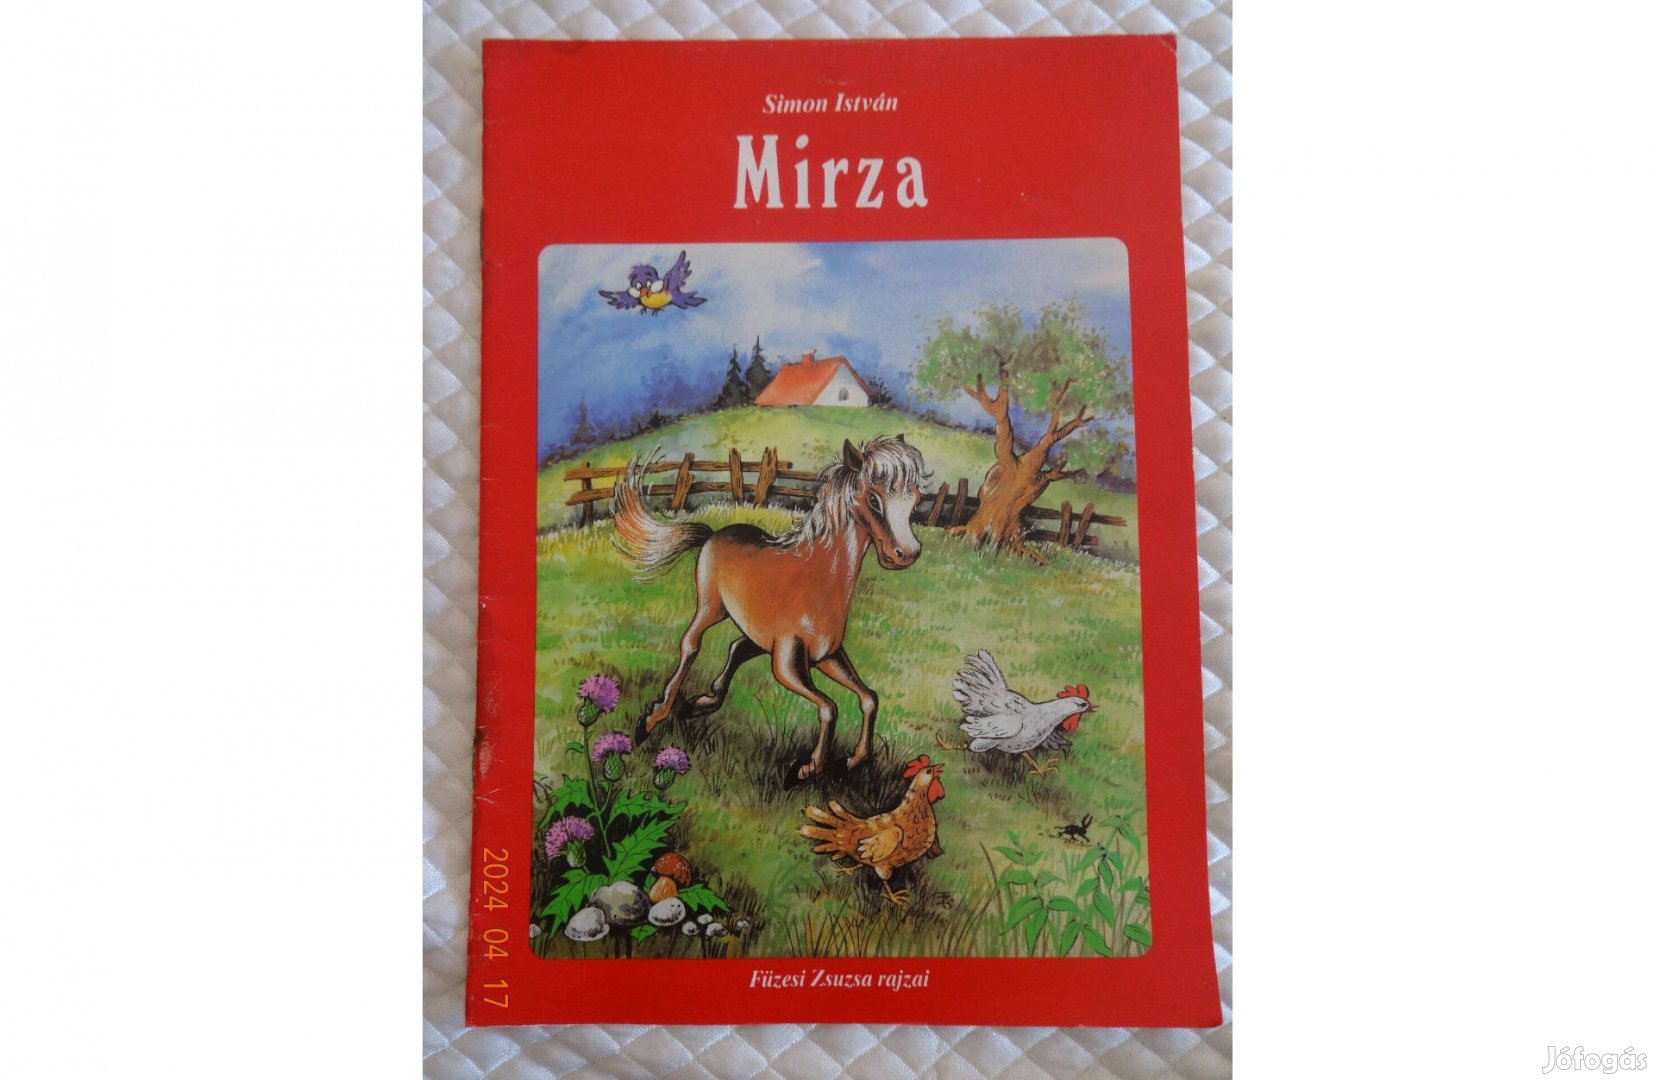 Simon István: Mirza - verses mese egy kiscsikóról Füzesi Zsuzsa rajzai